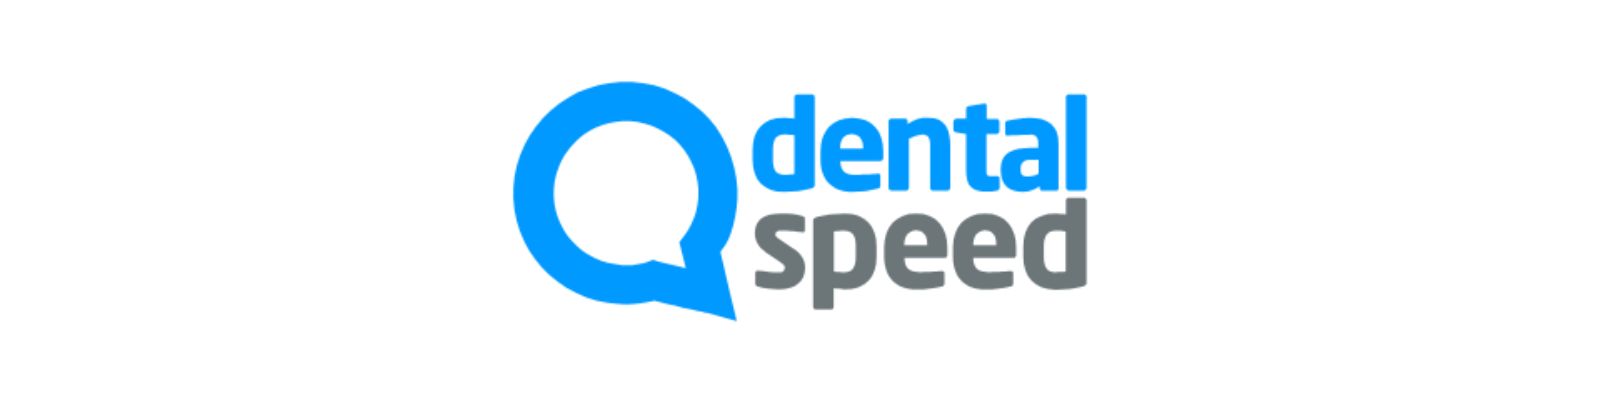 Dental Speed é confiável? Conheça a verdade sobre a empresa!